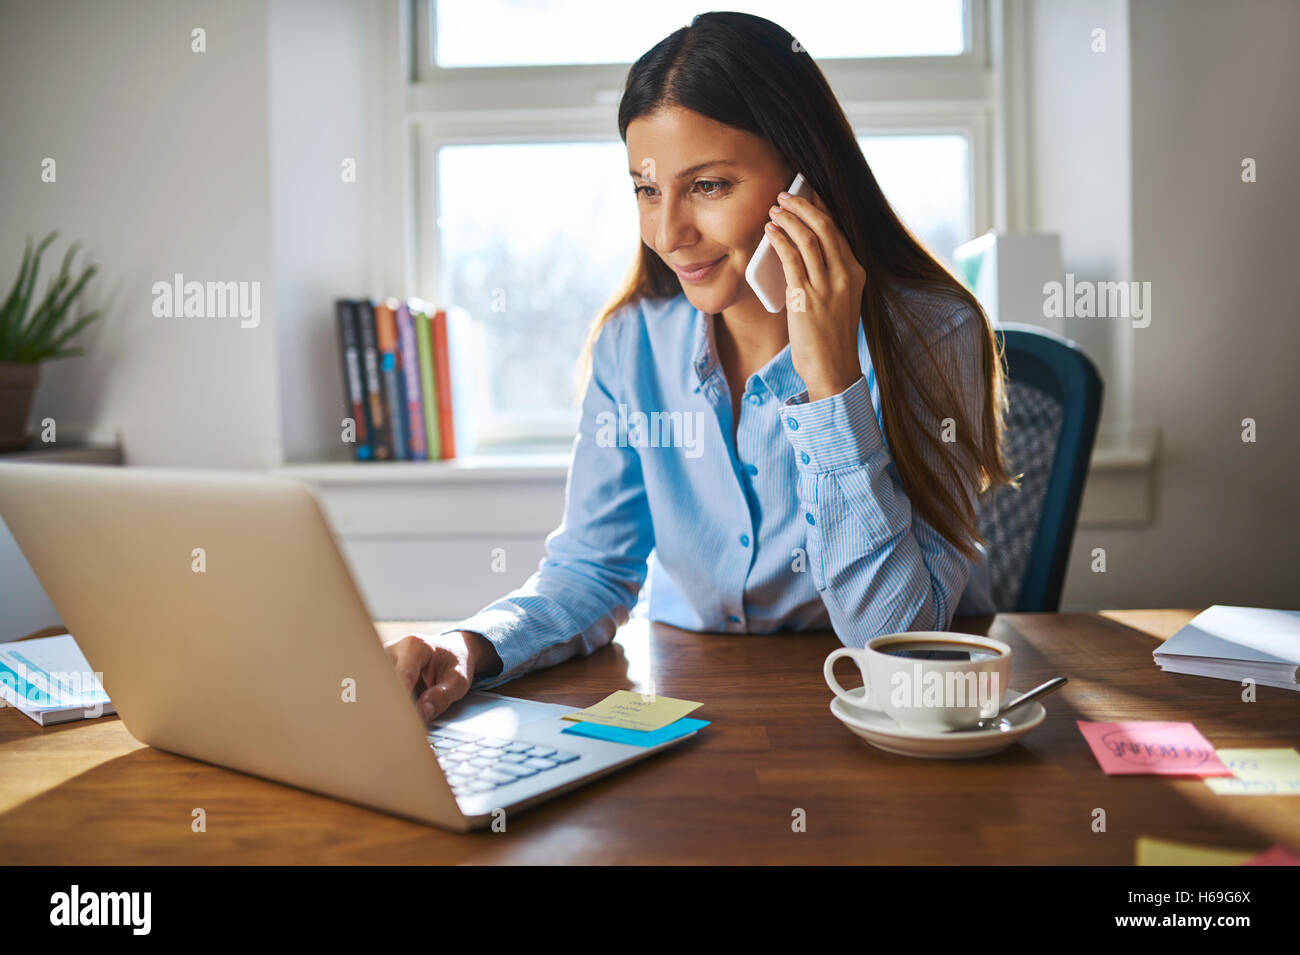 Süße junge weibliche Erwachsene mit Grinsen auf Handy während der Arbeit am Laptop-Computer am Schreibtisch neben Kaffeetasse mit großen Fenster auf der Rückseite Stockfoto